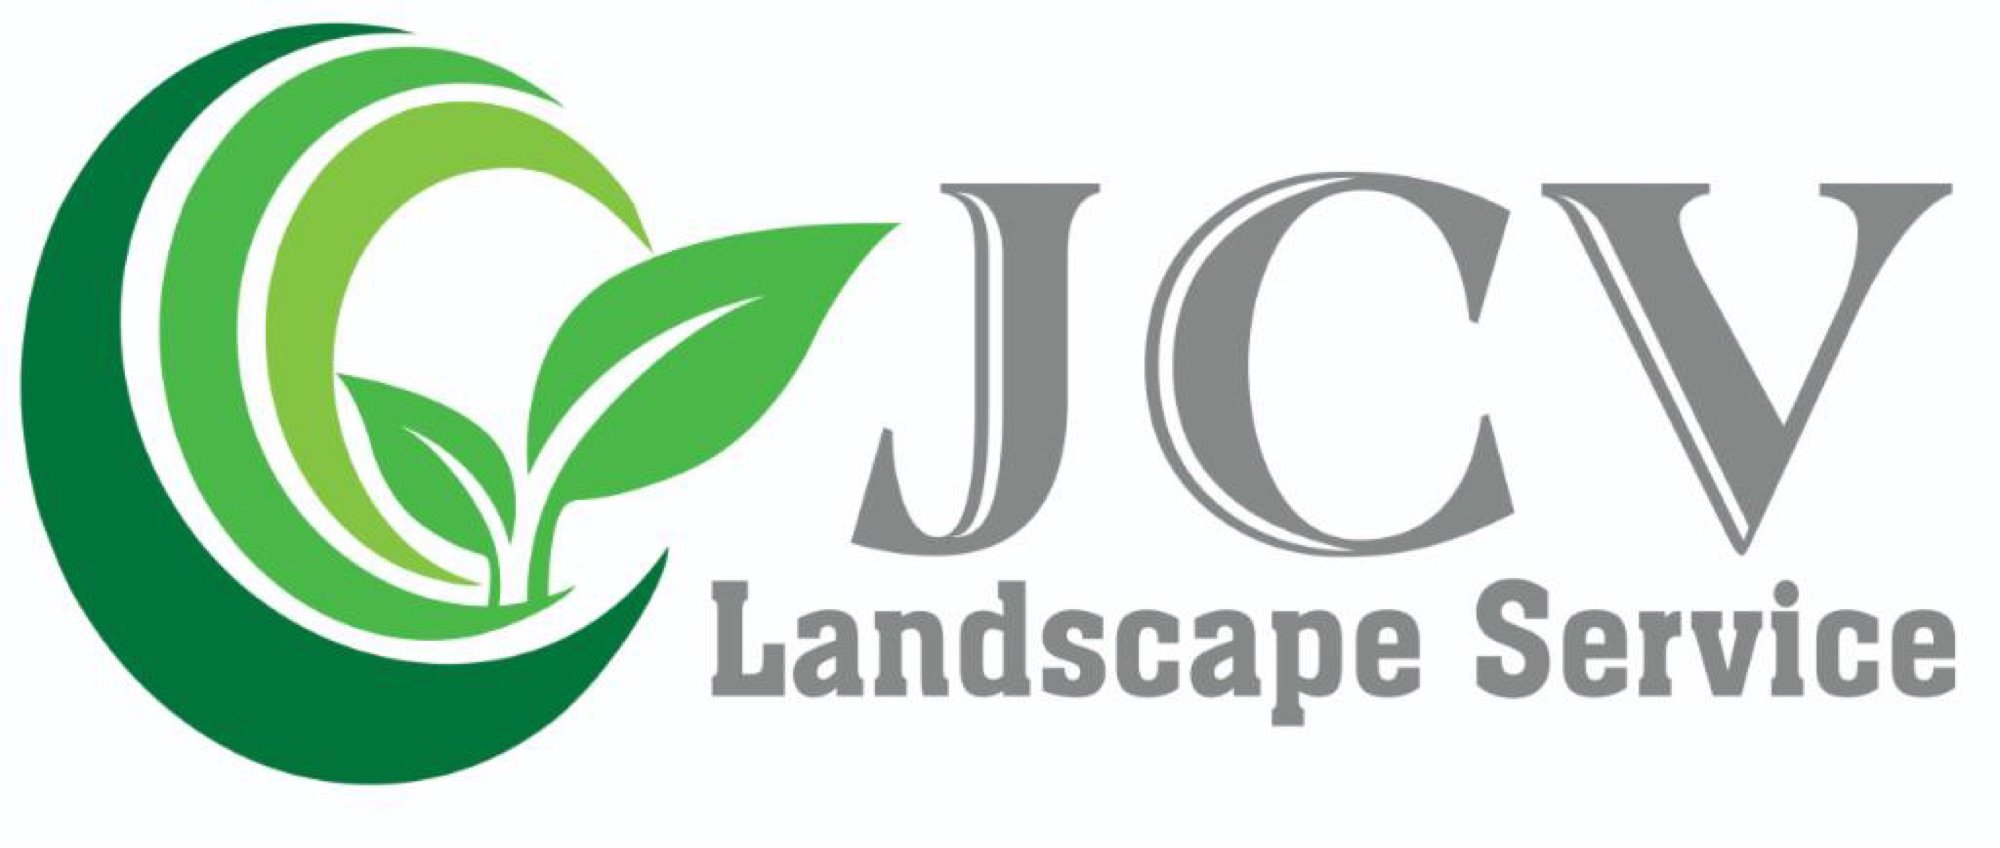 JCV Landscape Service Logo